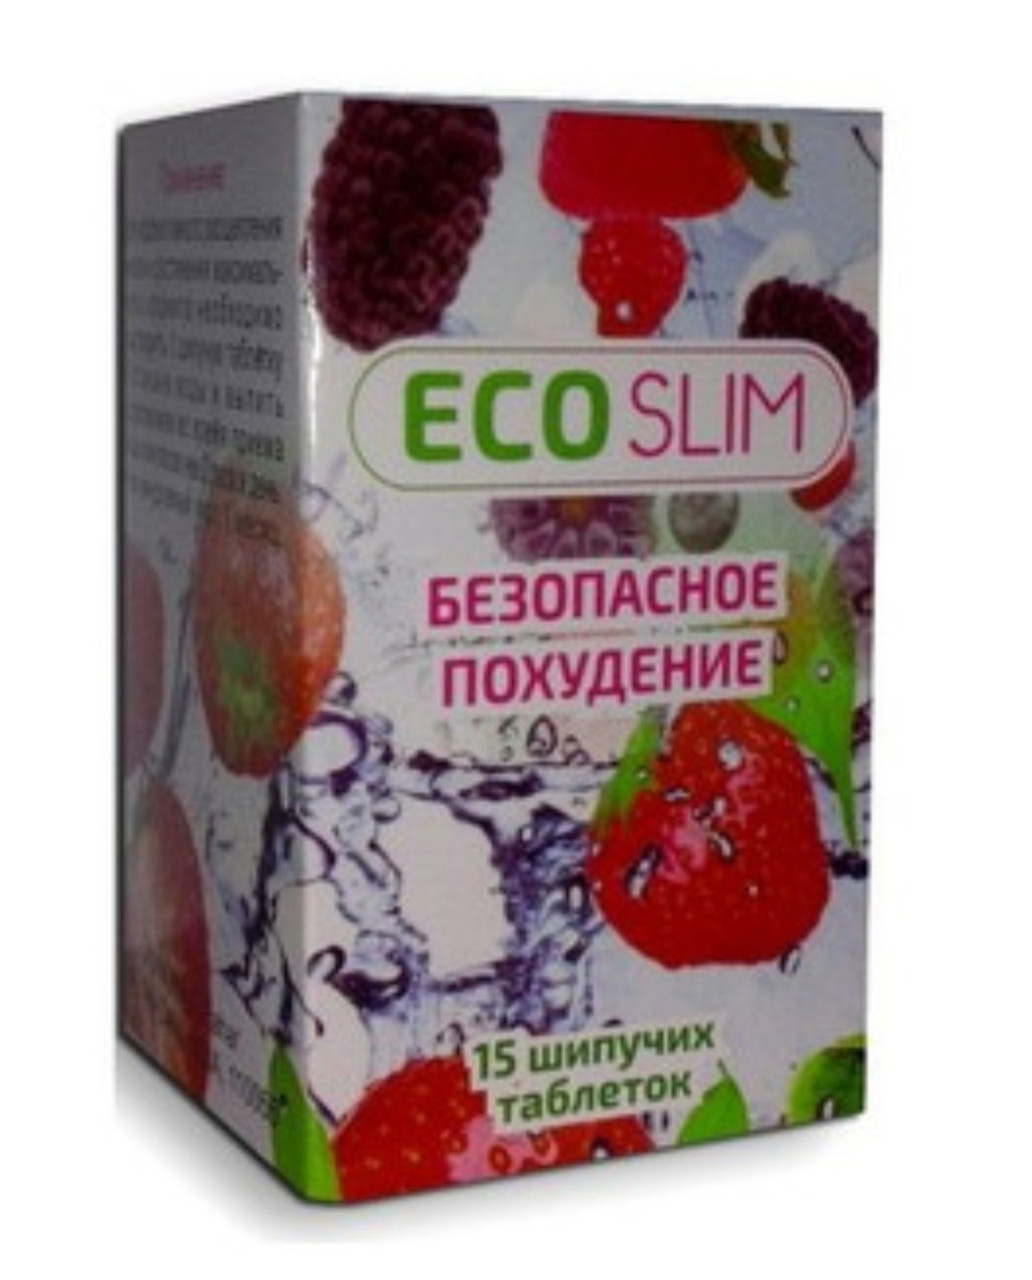 Eco Slim Prospect | Mod de Administrare | Eco Slim în Farmacii?